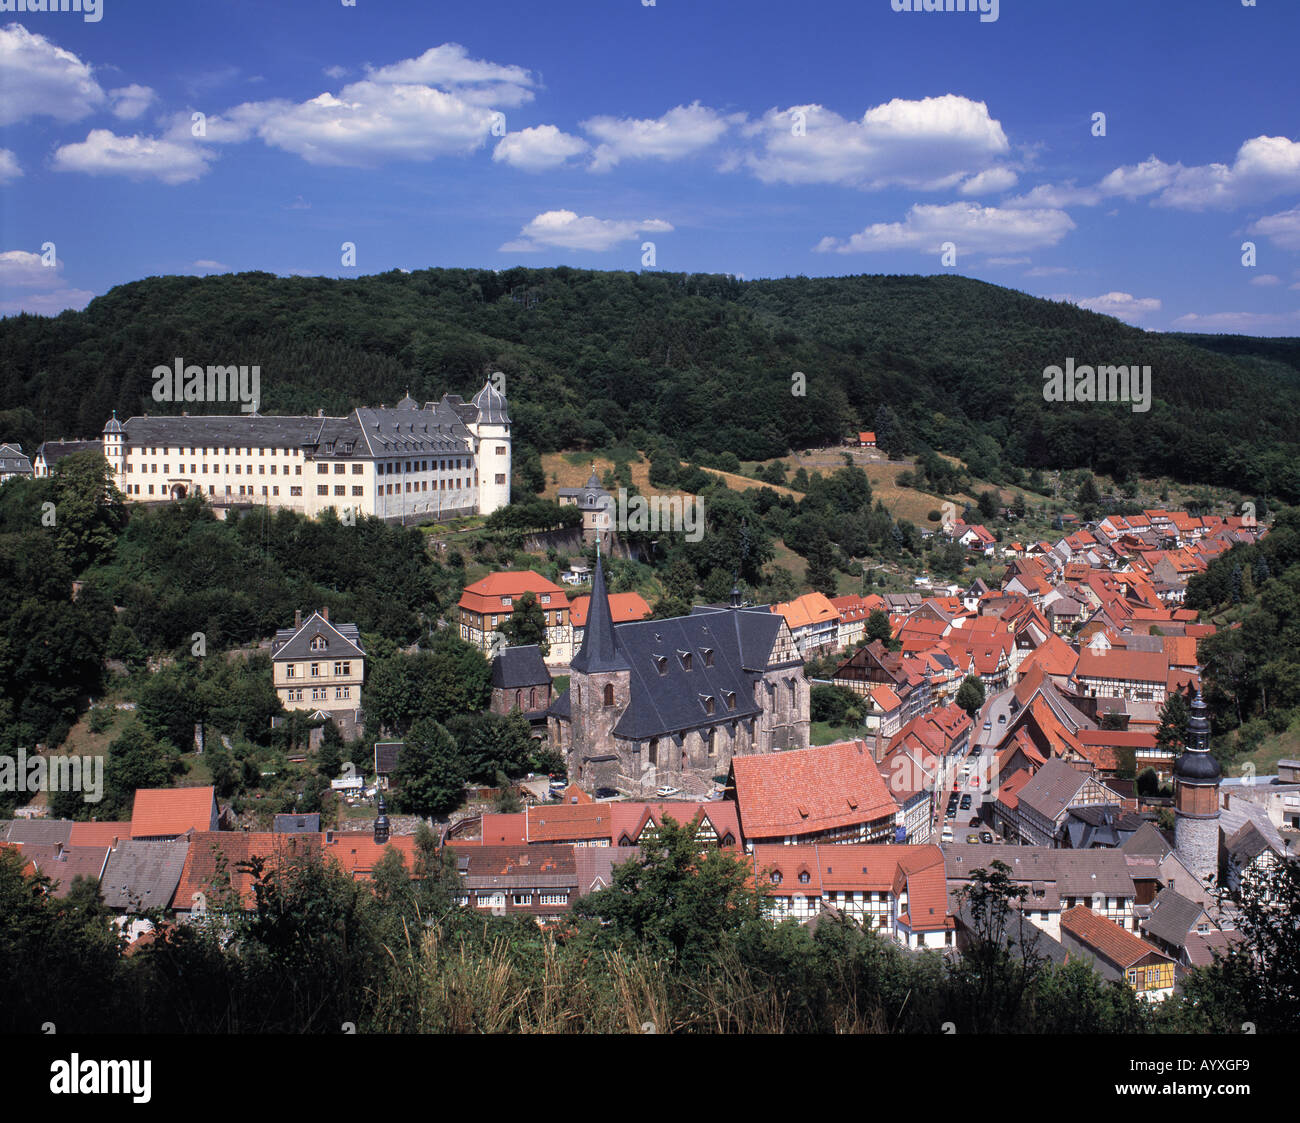 Panoramaansicht von Stadt und Renaissanceschloss, Stolberg (Harz), Kurort, Harz, Naturpark Harz, Sachsen-Anhalt Foto Stock